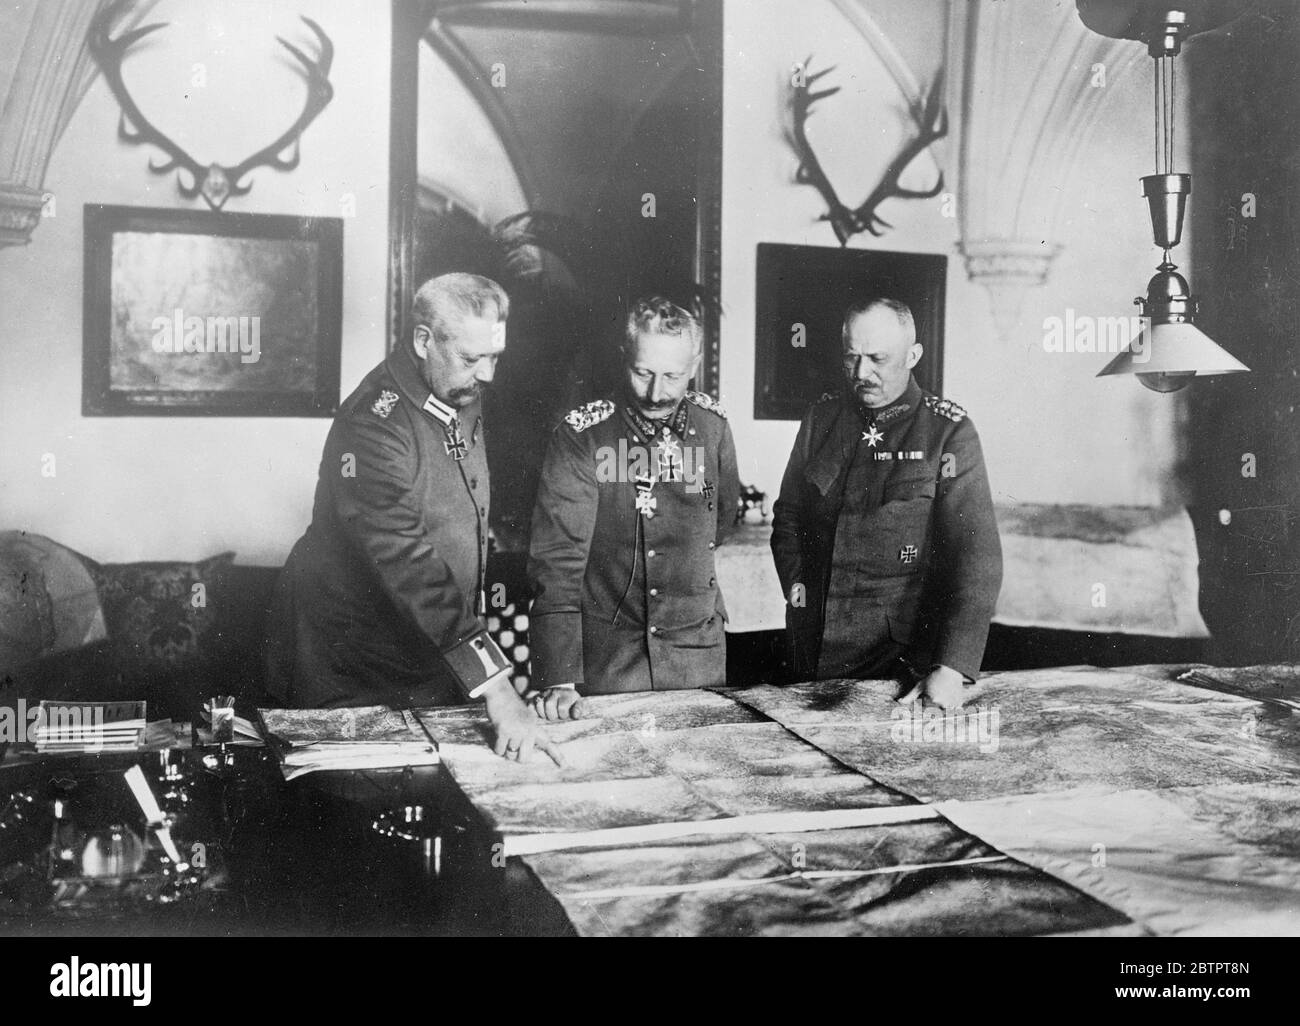 General Ludendorff berichtete, dass er starb. General Ludendorff, der ehemalige Oberbefehlshaber der deutschen Armee, soll sterben. Er ist seit einiger Zeit in einer privaten Krankenpflegeschklinik in München schwer krank und hat einen plötzlichen Rückfall. Er wurde kürzlich einer Gallenblasenoperation unterzogen. Der General ist 72 Jahre alt. Foto zeigt ein historisches Kriegsbild von General Ludendorff (rechts), im Treffen mit dem Kaiser (Mitte) und Feldmarschall von Hindenburg. 30. November 1937 Stockfoto